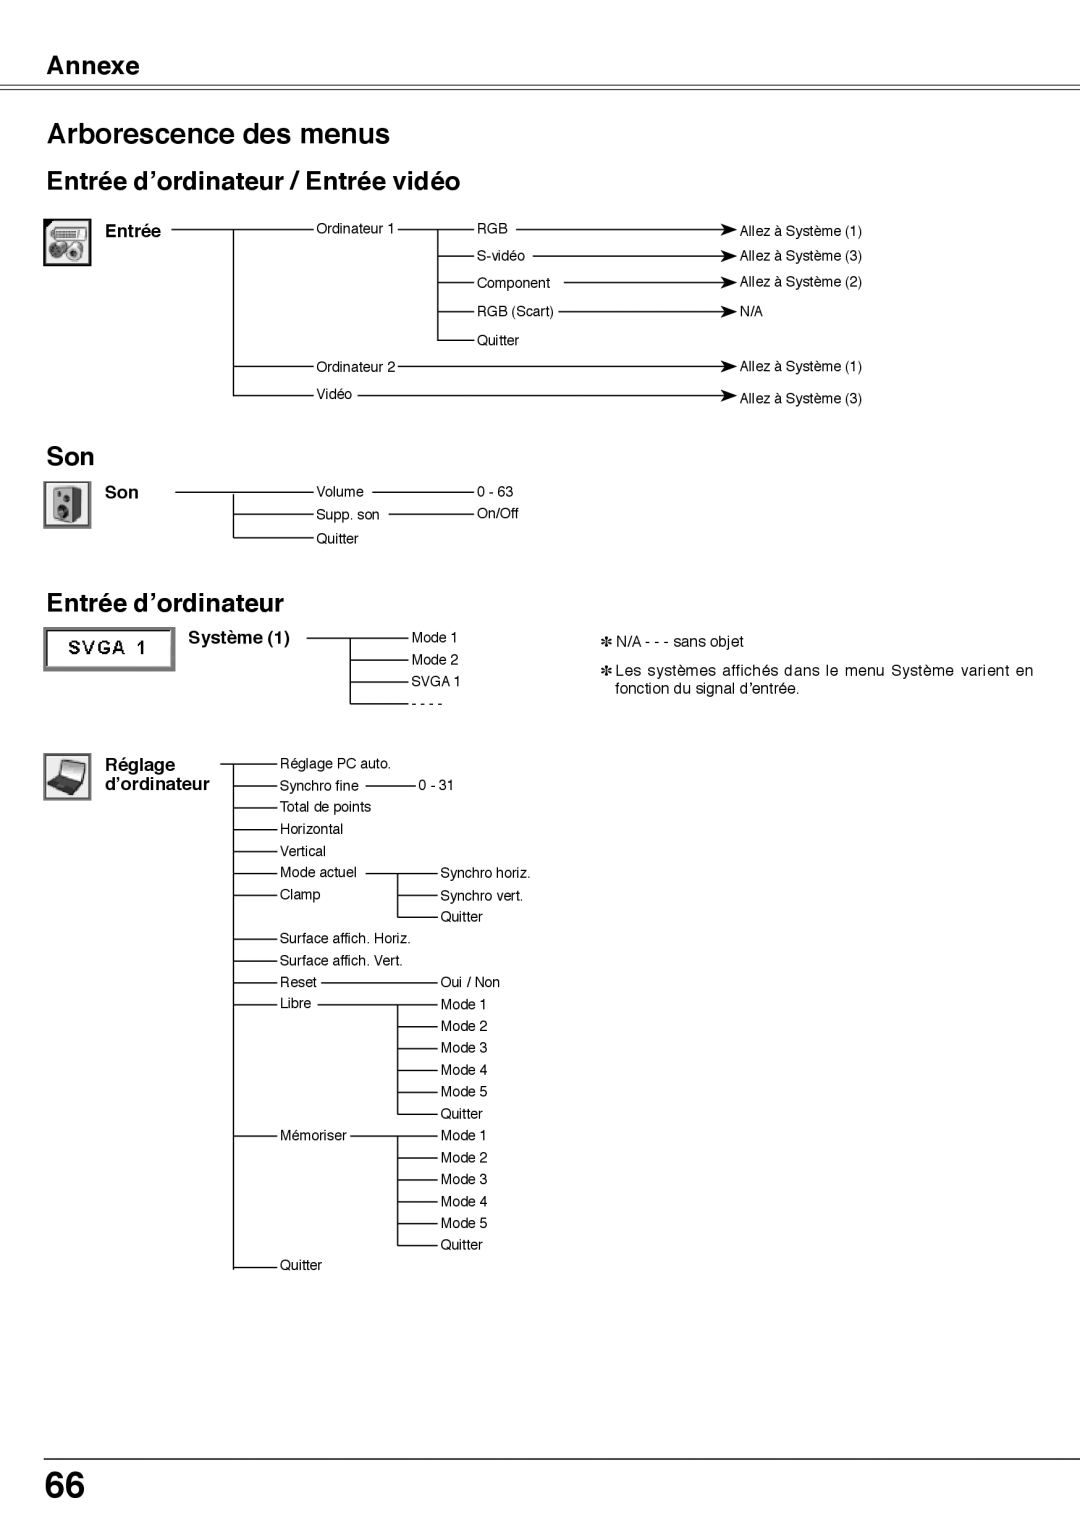 Fisher PLC-XW60 manual Arborescence des menus, Entrée d’ordinateur / Entrée vidéo, Annexe, N/A - - - sans objet 